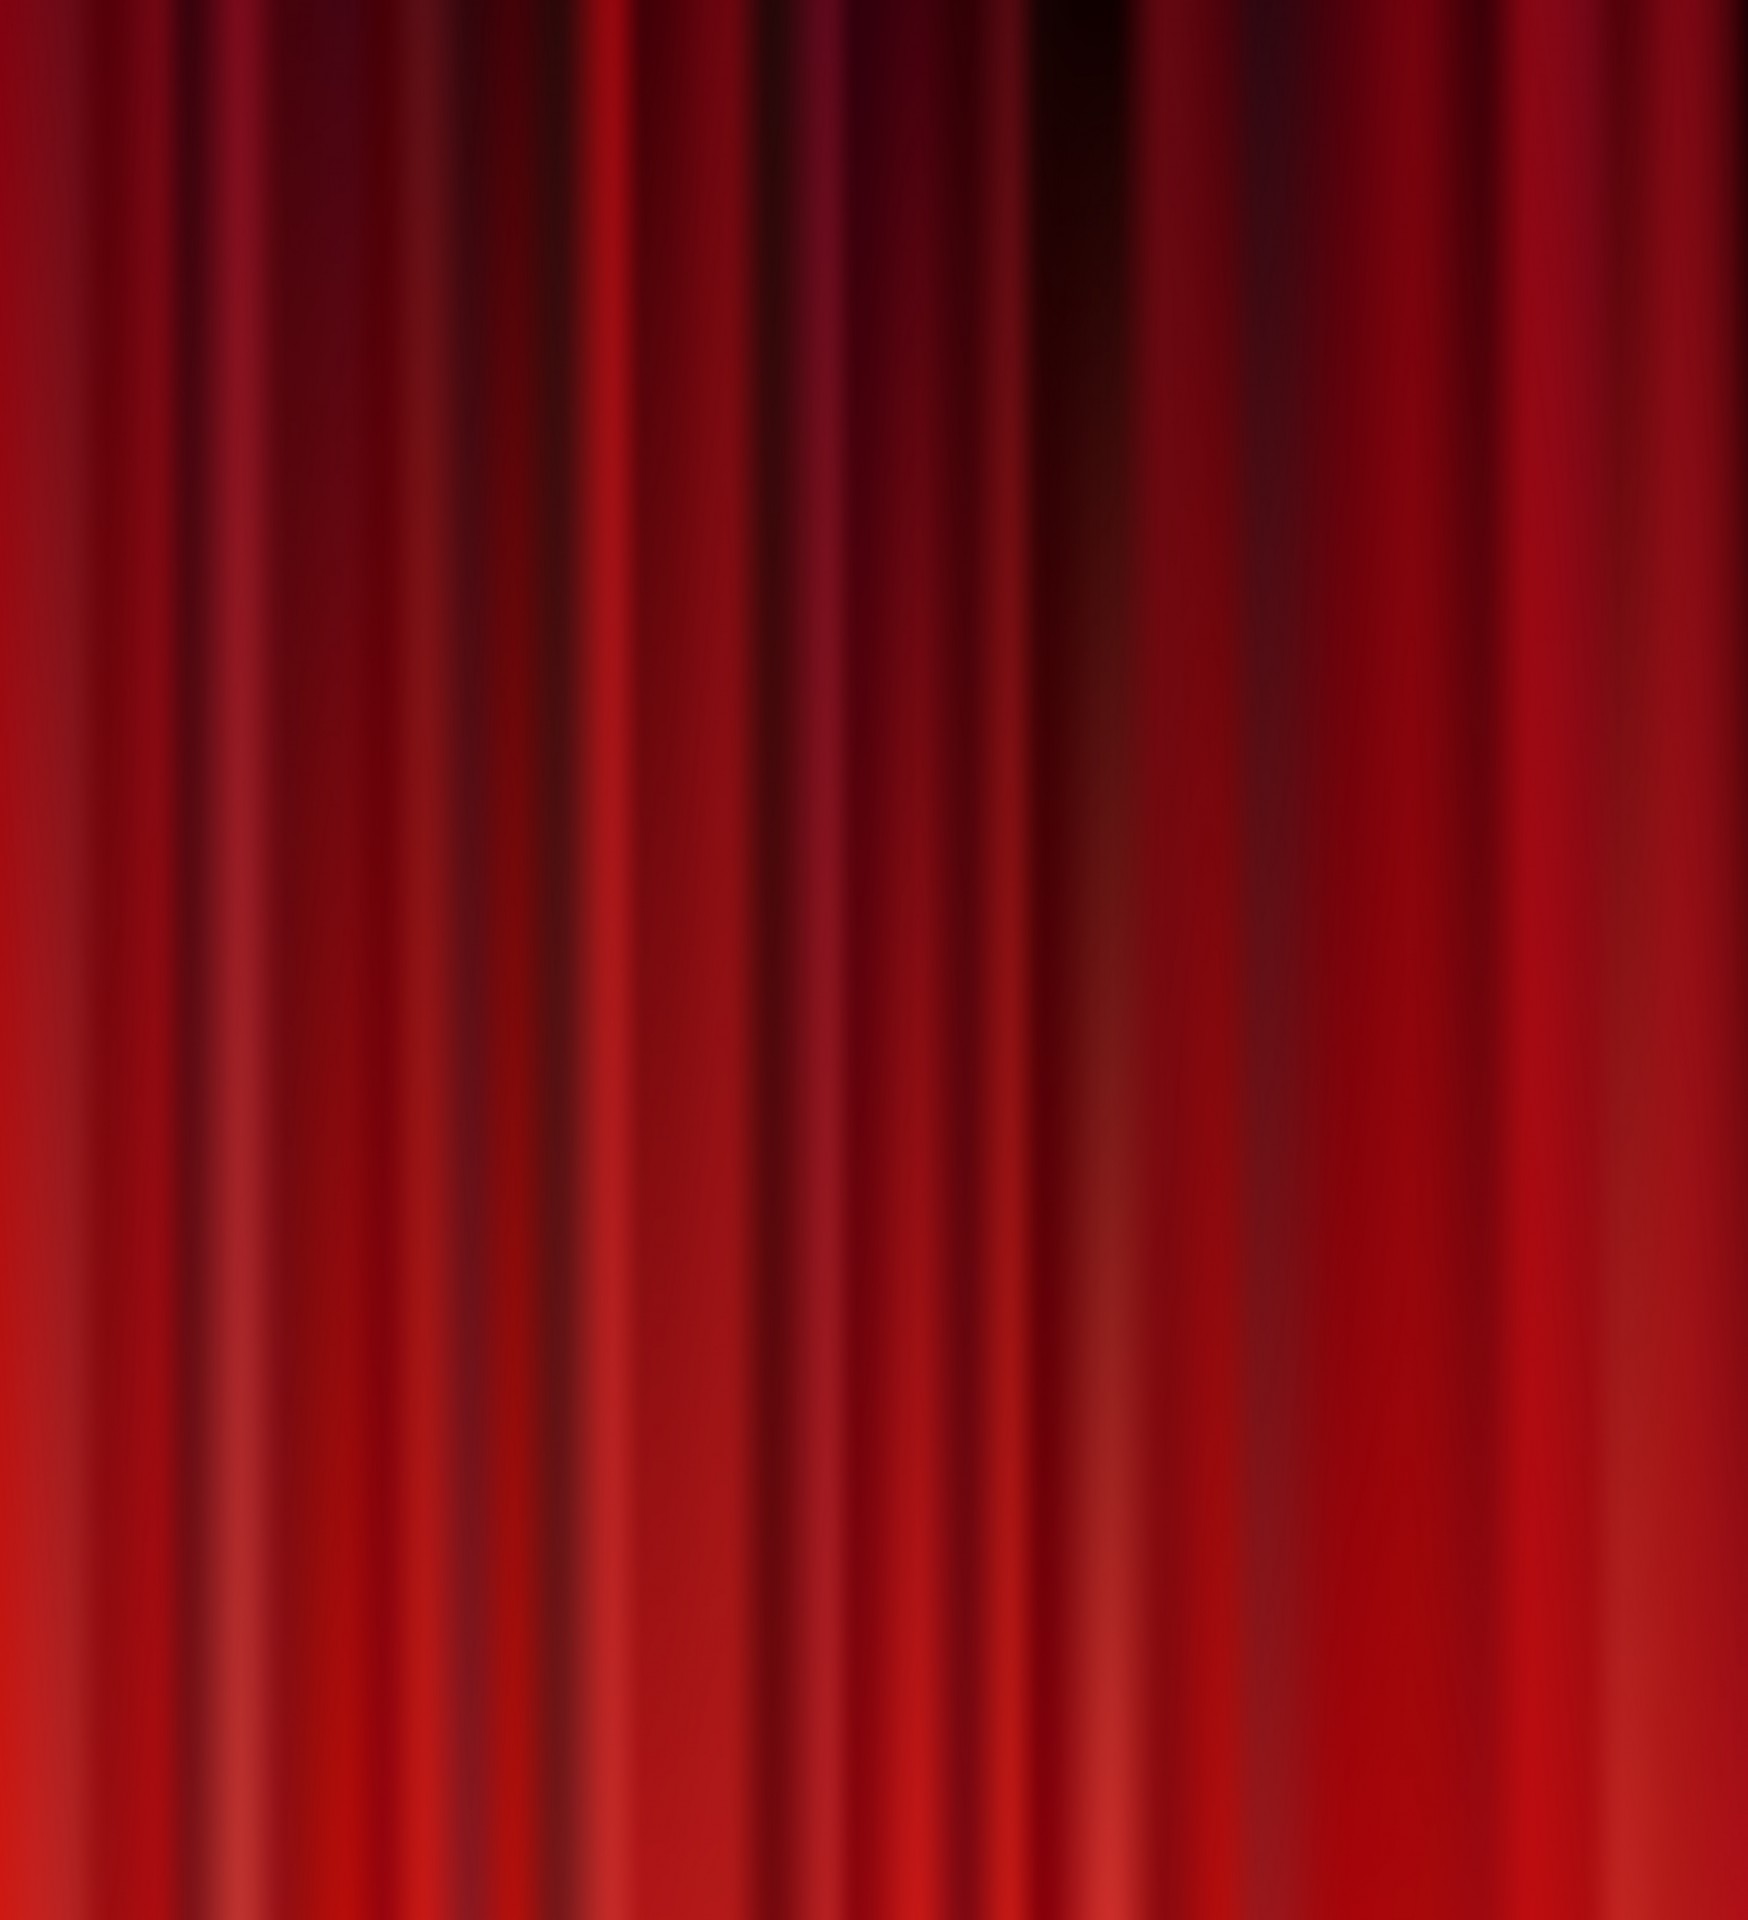 Red Velvet Curtains Background